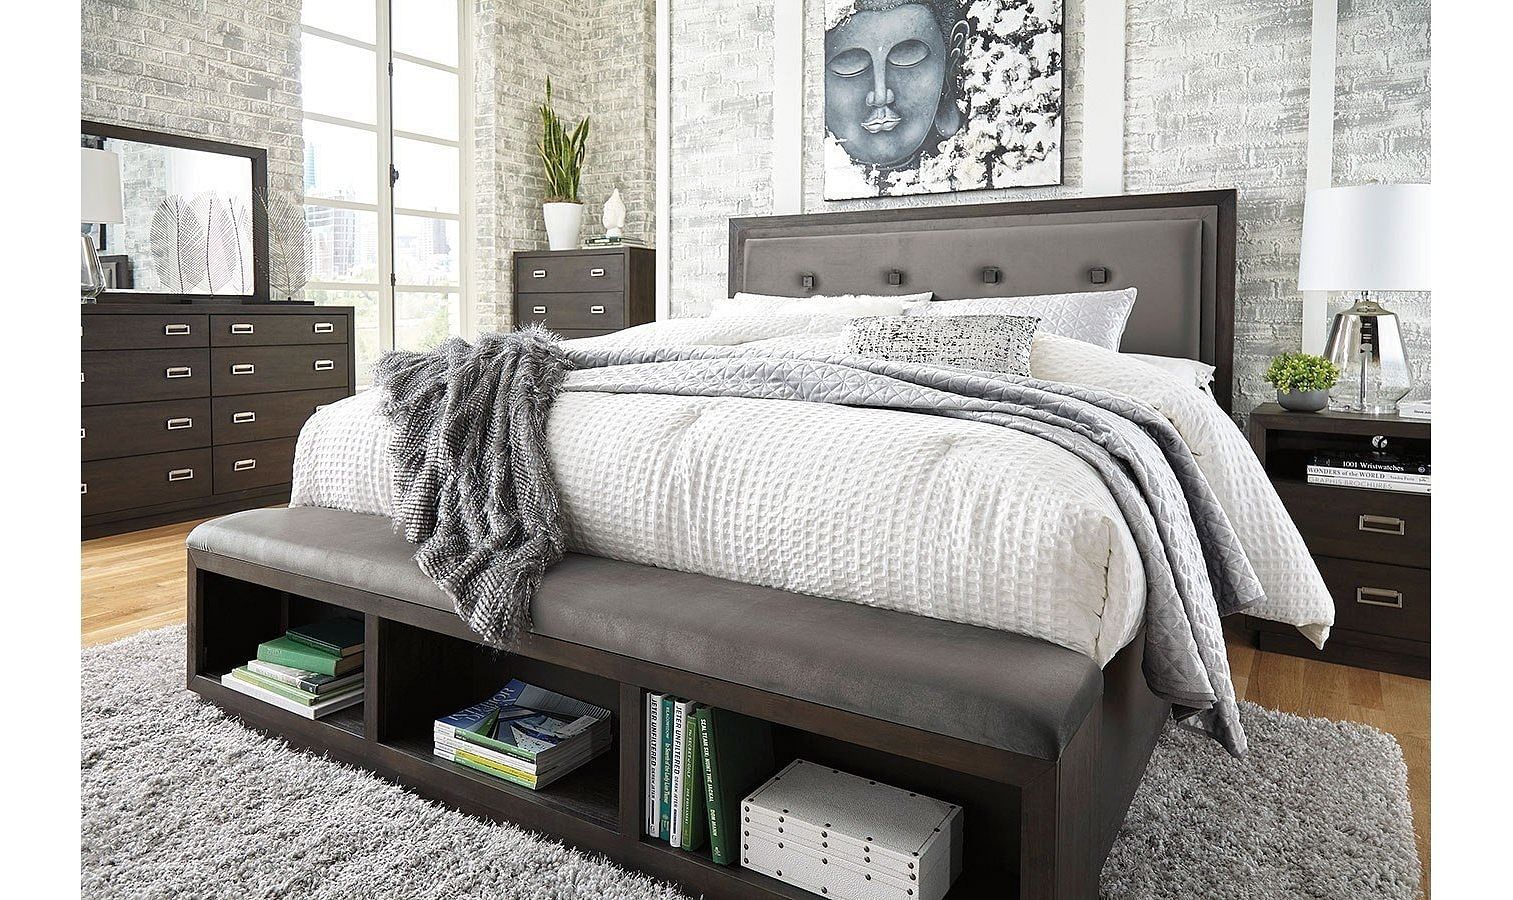 Ashley Furniture - Hyndell Bedroom Set